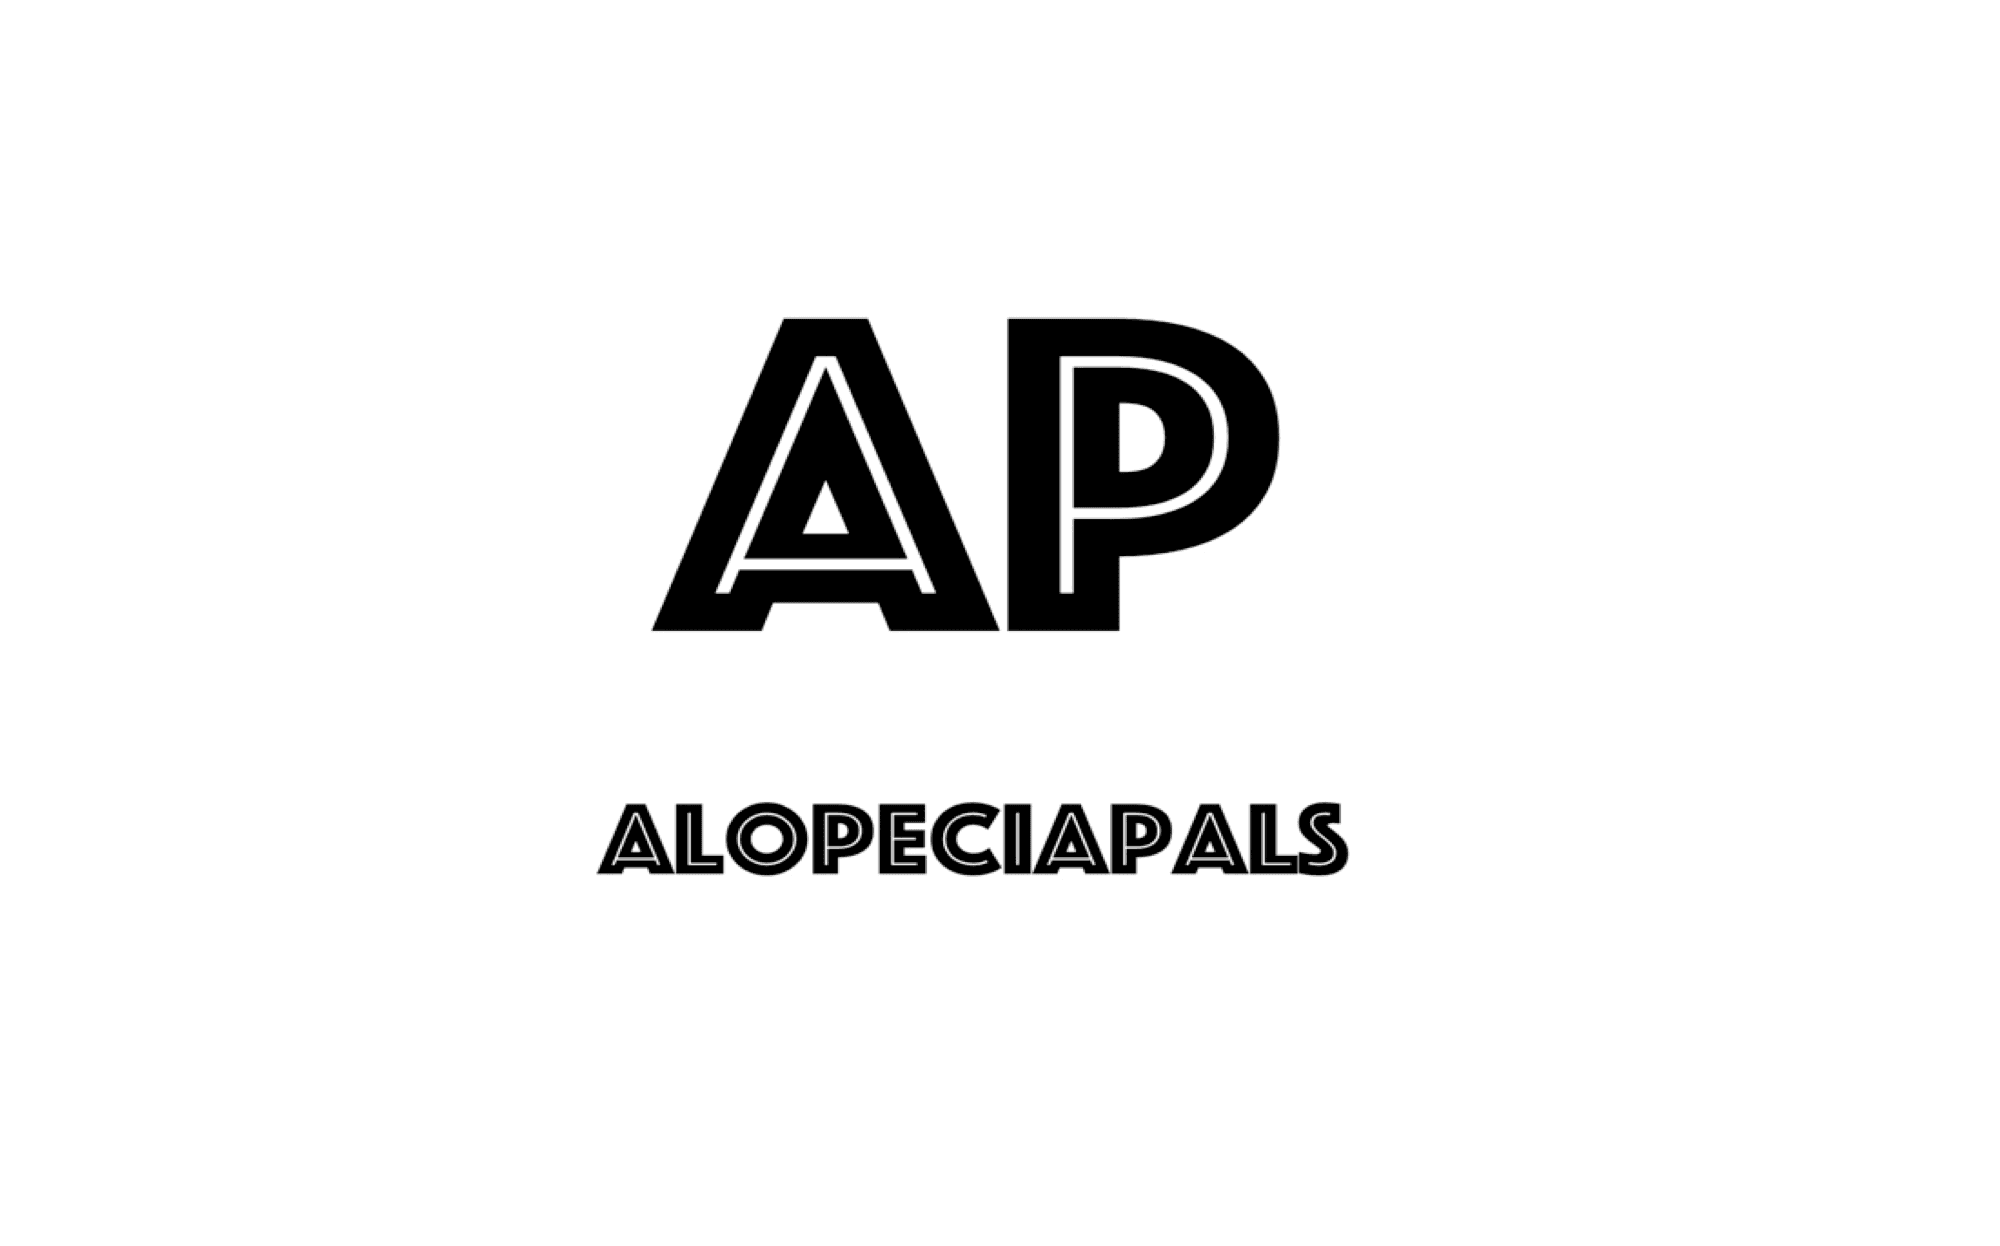 AlopeciaPals